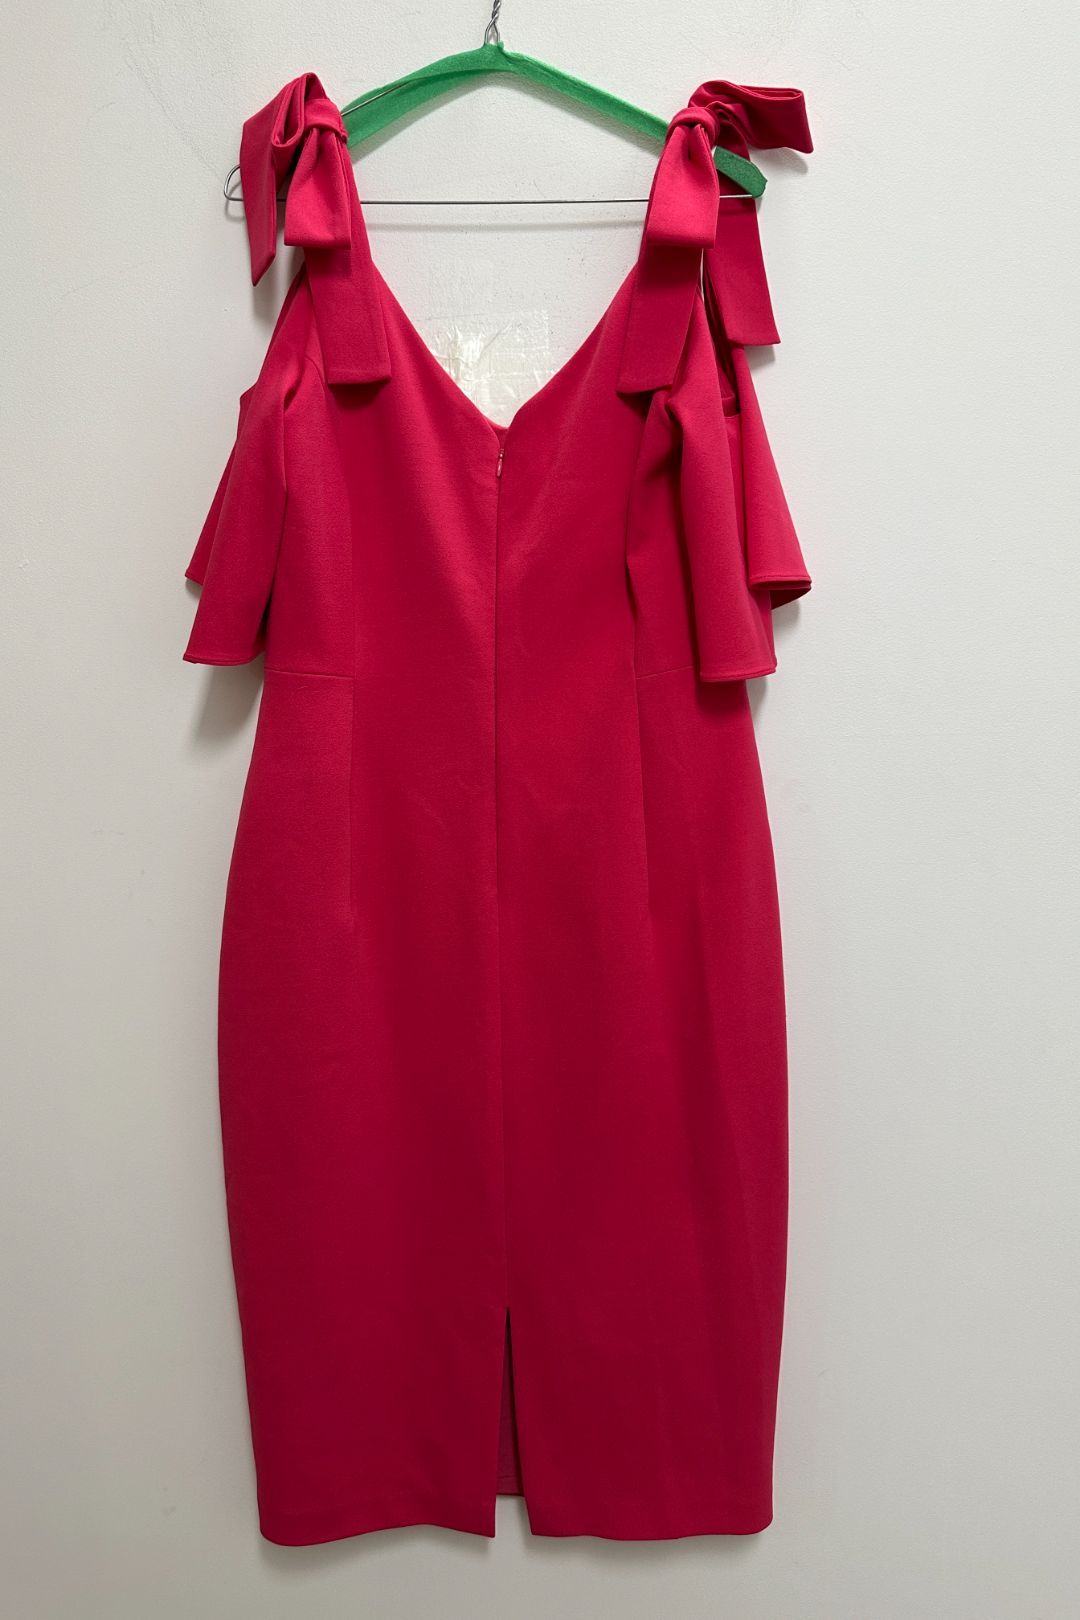 Anthea Crawford Hot Pink Cold Shoulder Dress